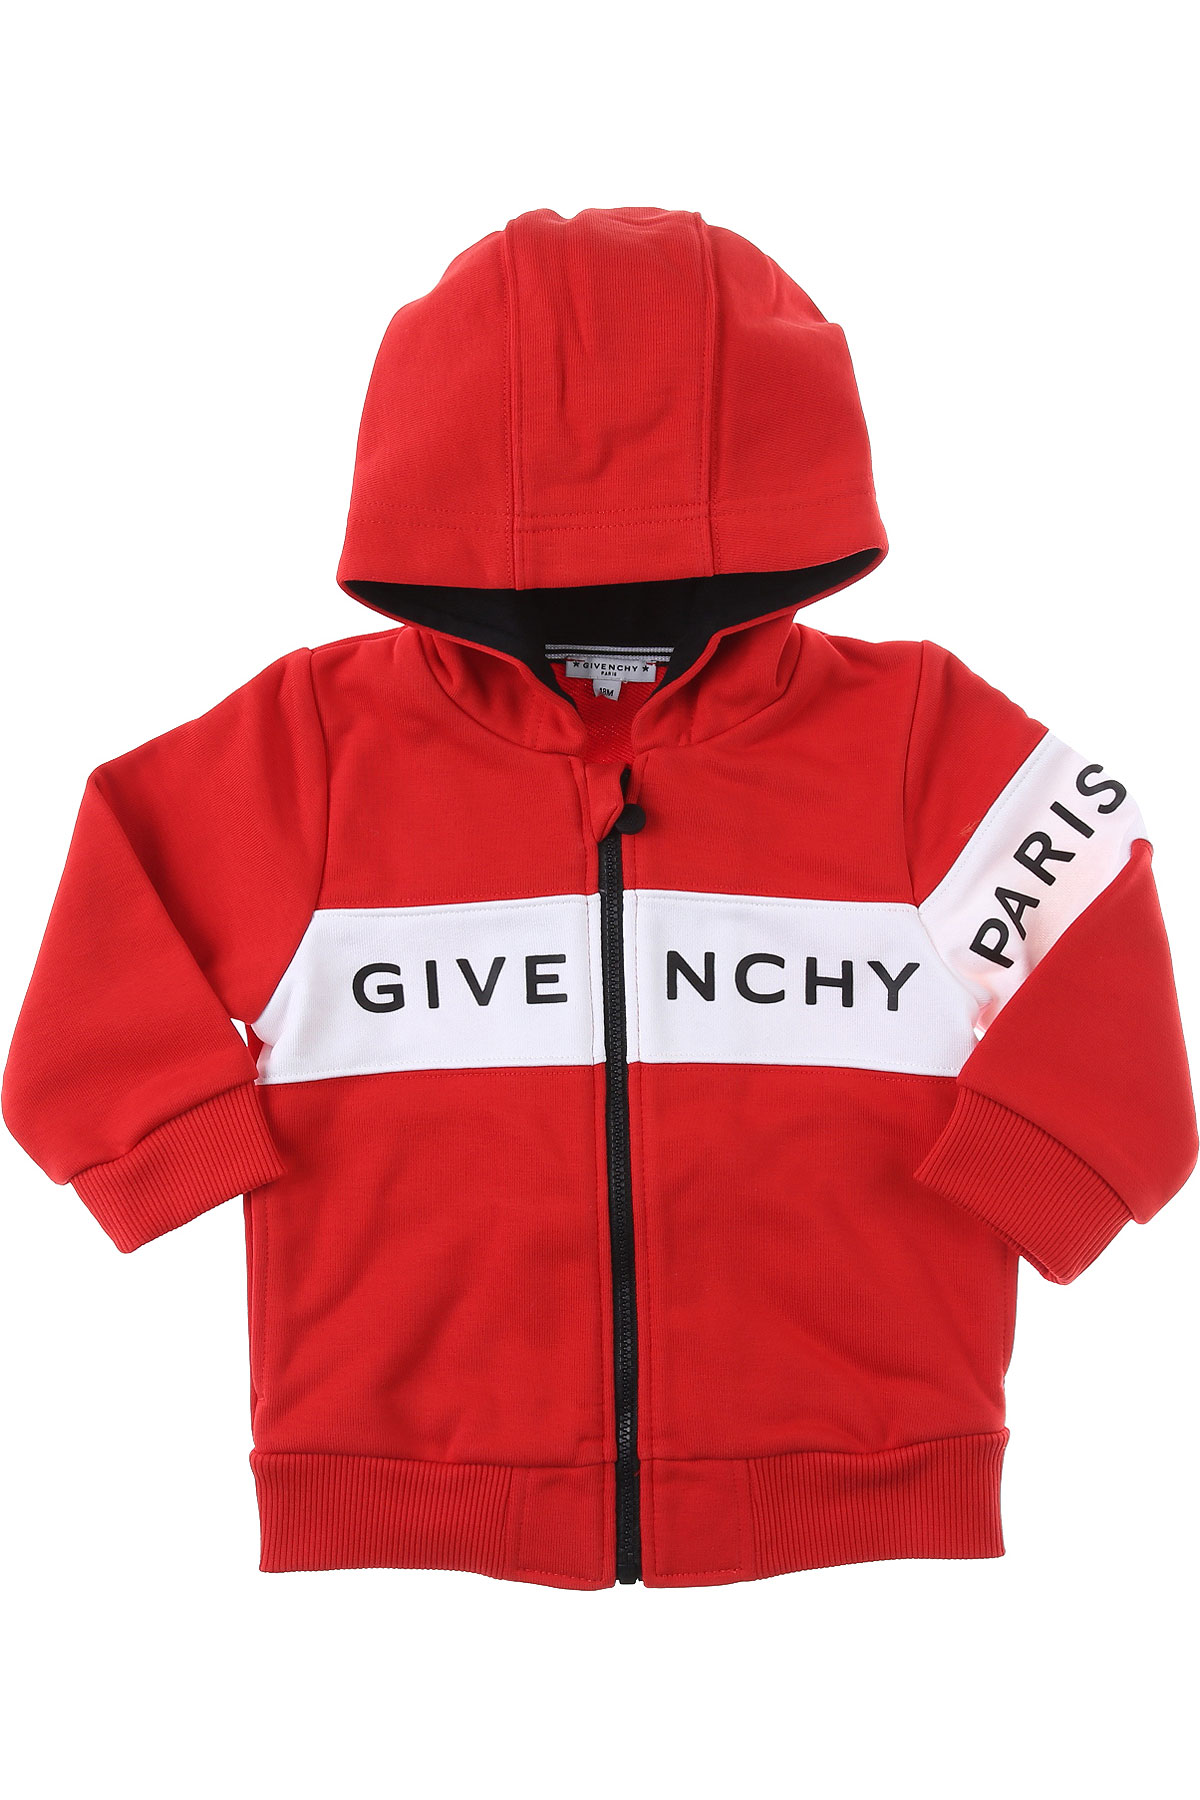 Givenchy Baby Sweatshirt & Kapuzenpullover für Jungen Günstig im Sale, Rot, Baumwolle, 2017, 12 M 18M 2Y